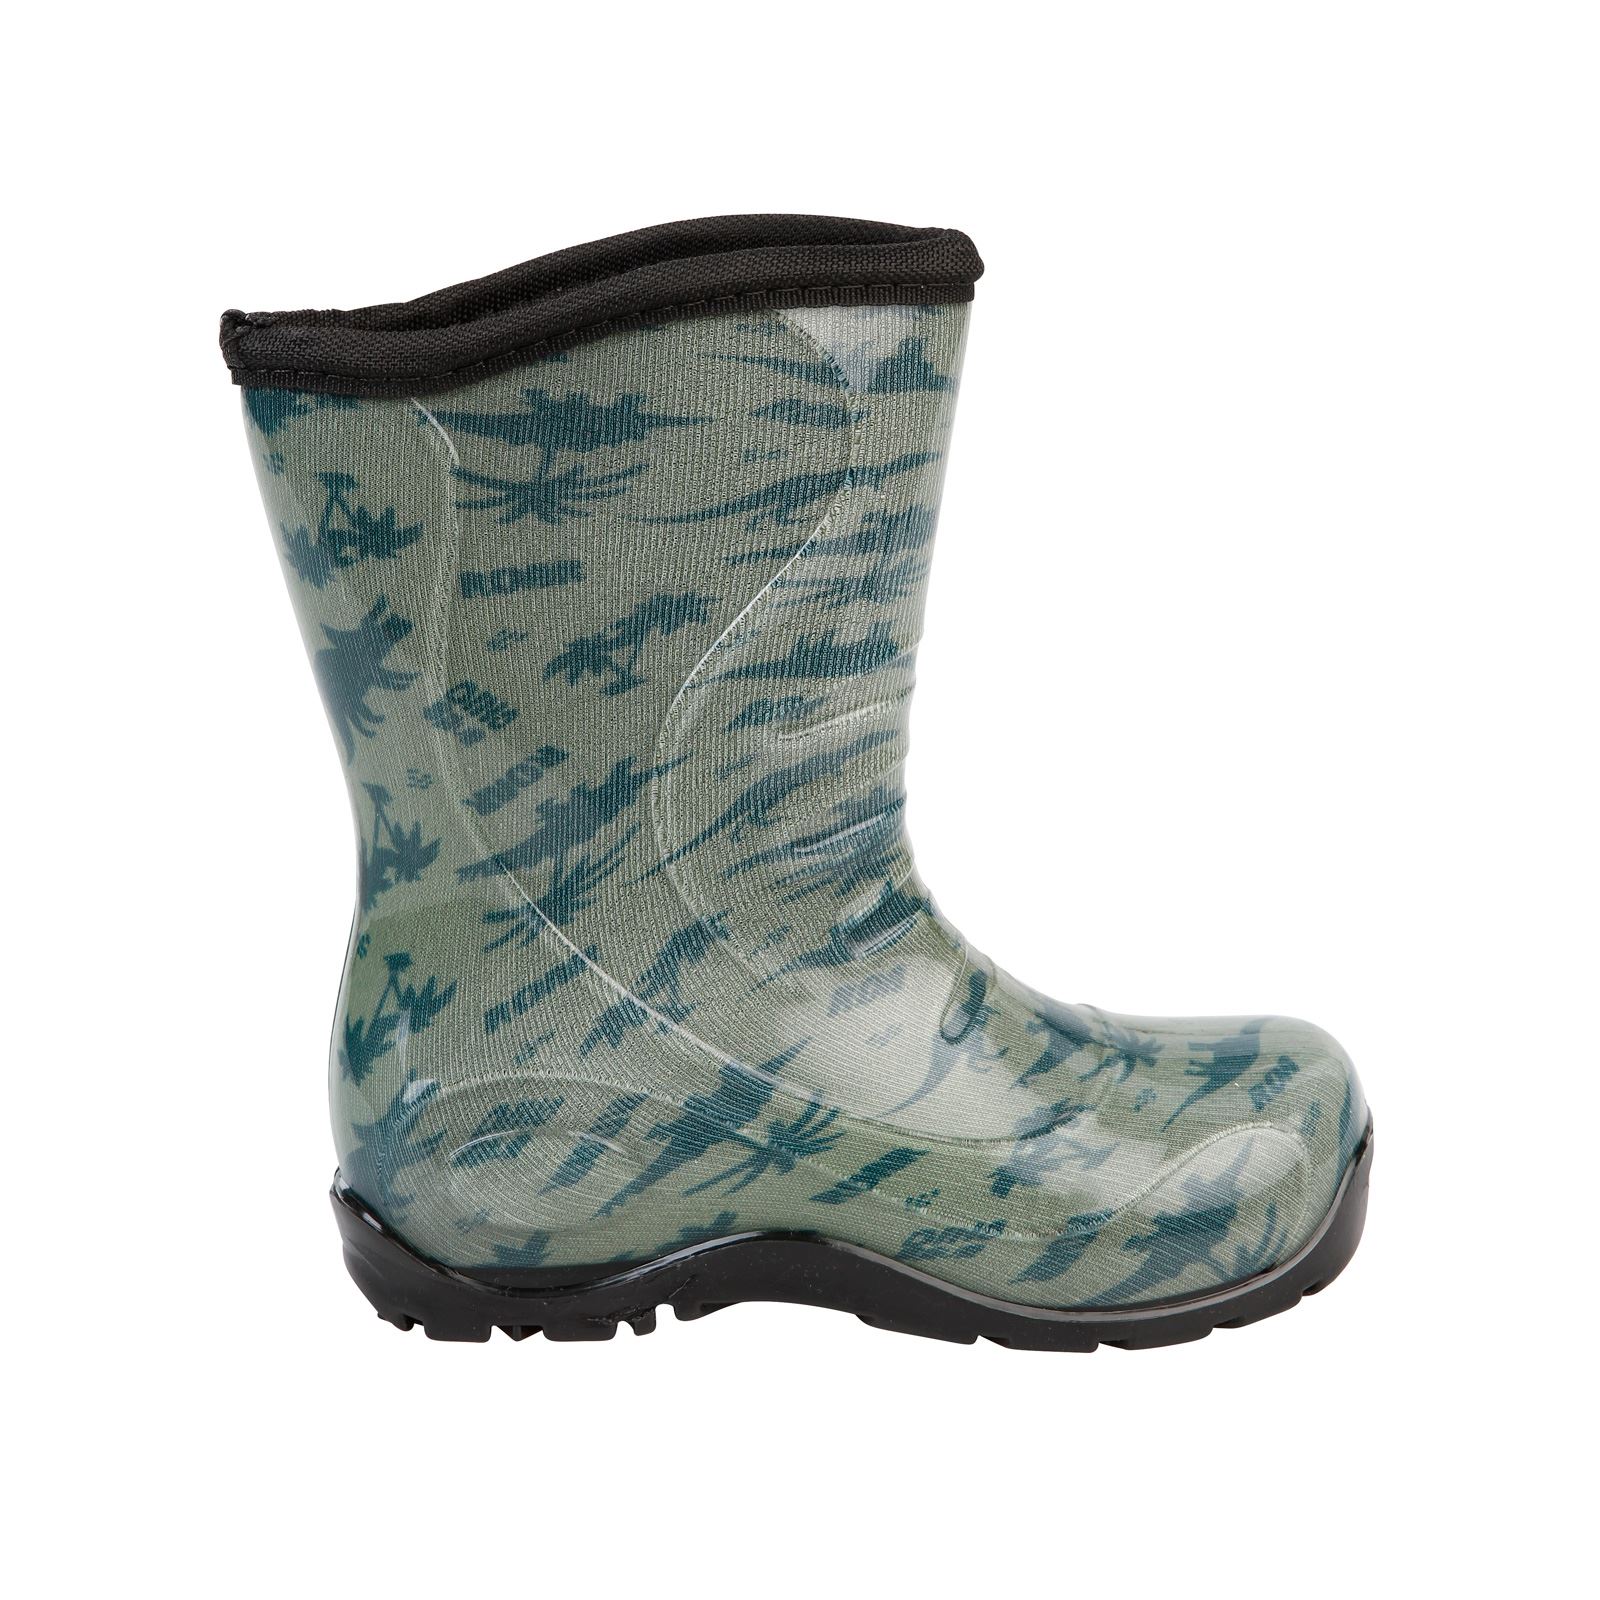 Boots Erkek Çocuk Dinazor Desenli Yağmur Çizmesi 24-28 Numara Haki